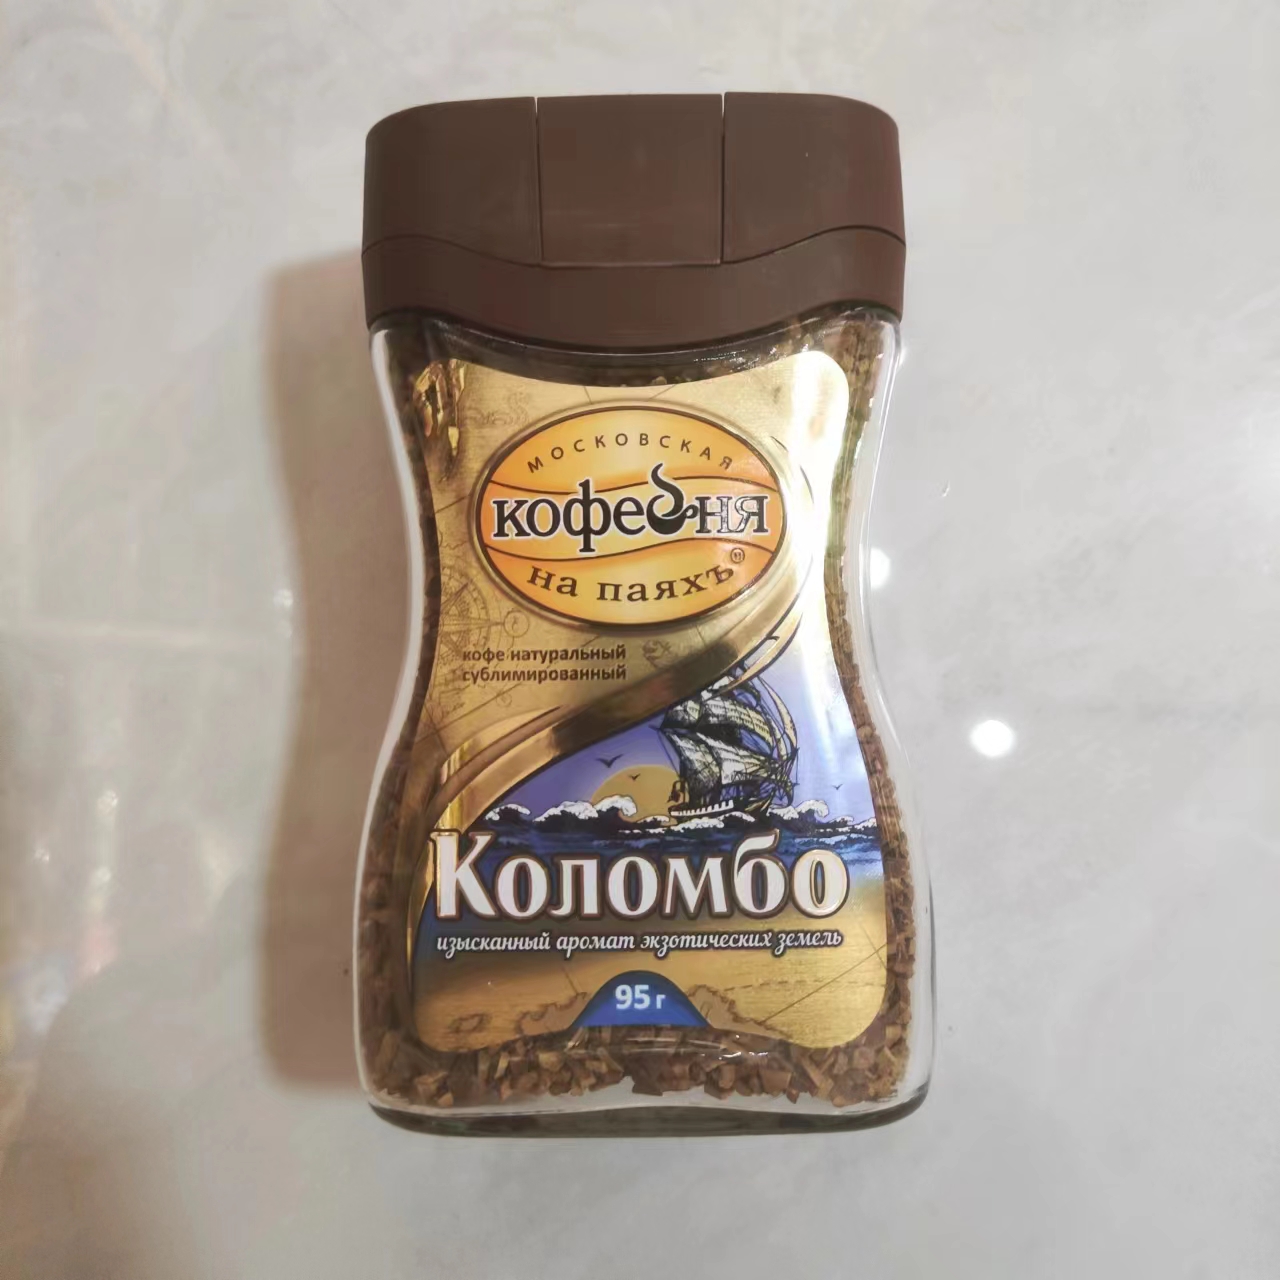 俄罗斯咖啡原装进口速溶低脂无添加黑咖啡纯咖啡苦咖啡包邮